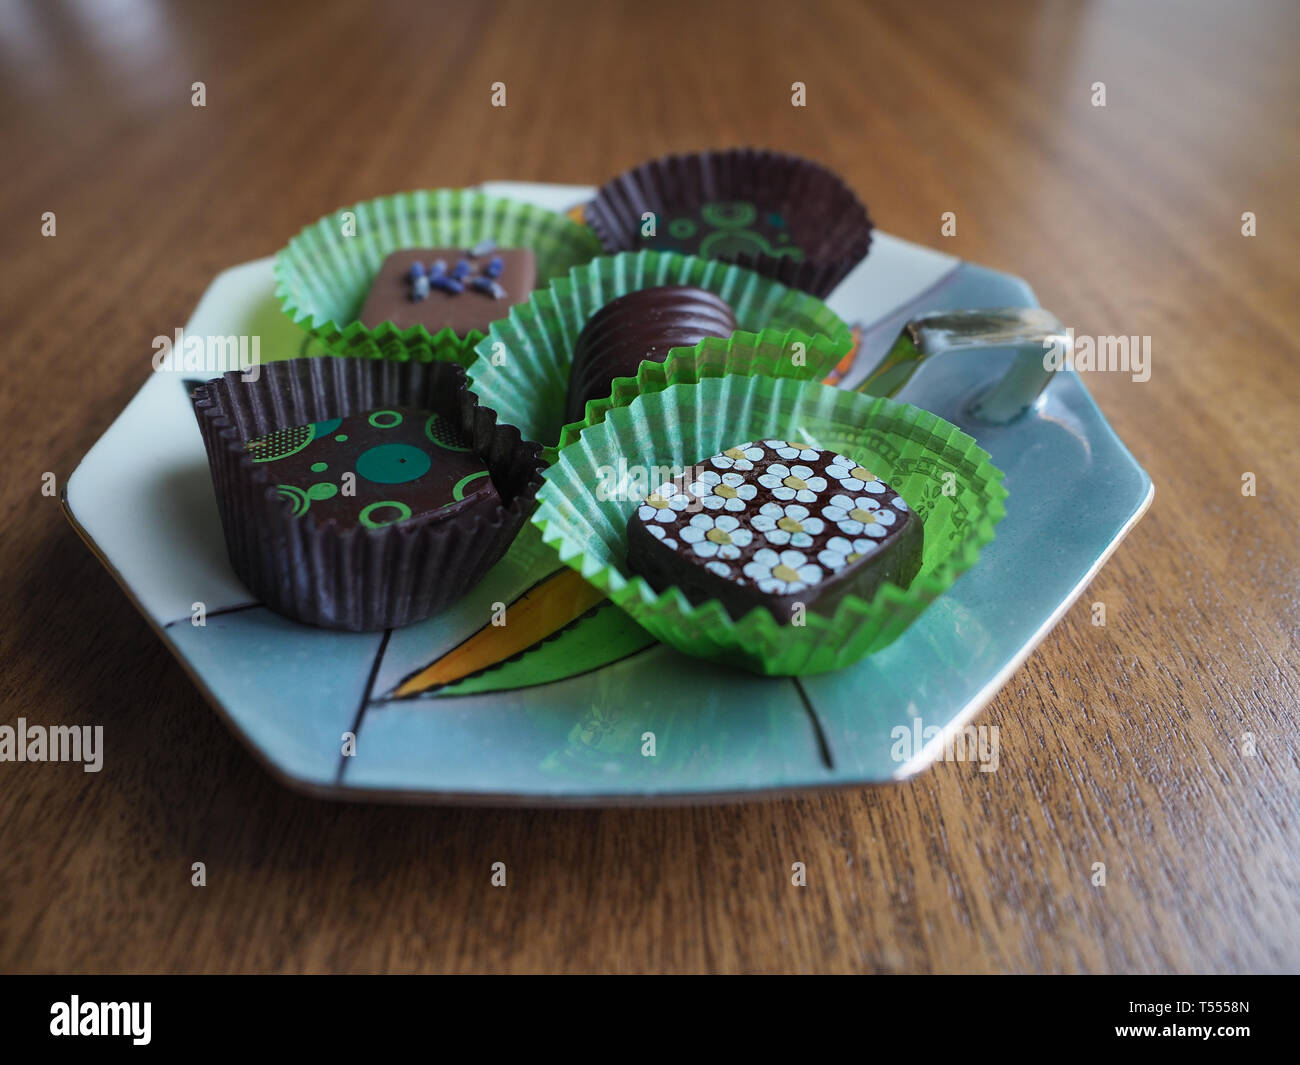 Cinque cioccolatini decorate in verde e marrone di involucri su una caramella di porcellana piatto con tavola di legno in background. Fotografato a livello degli occhi. Foto Stock